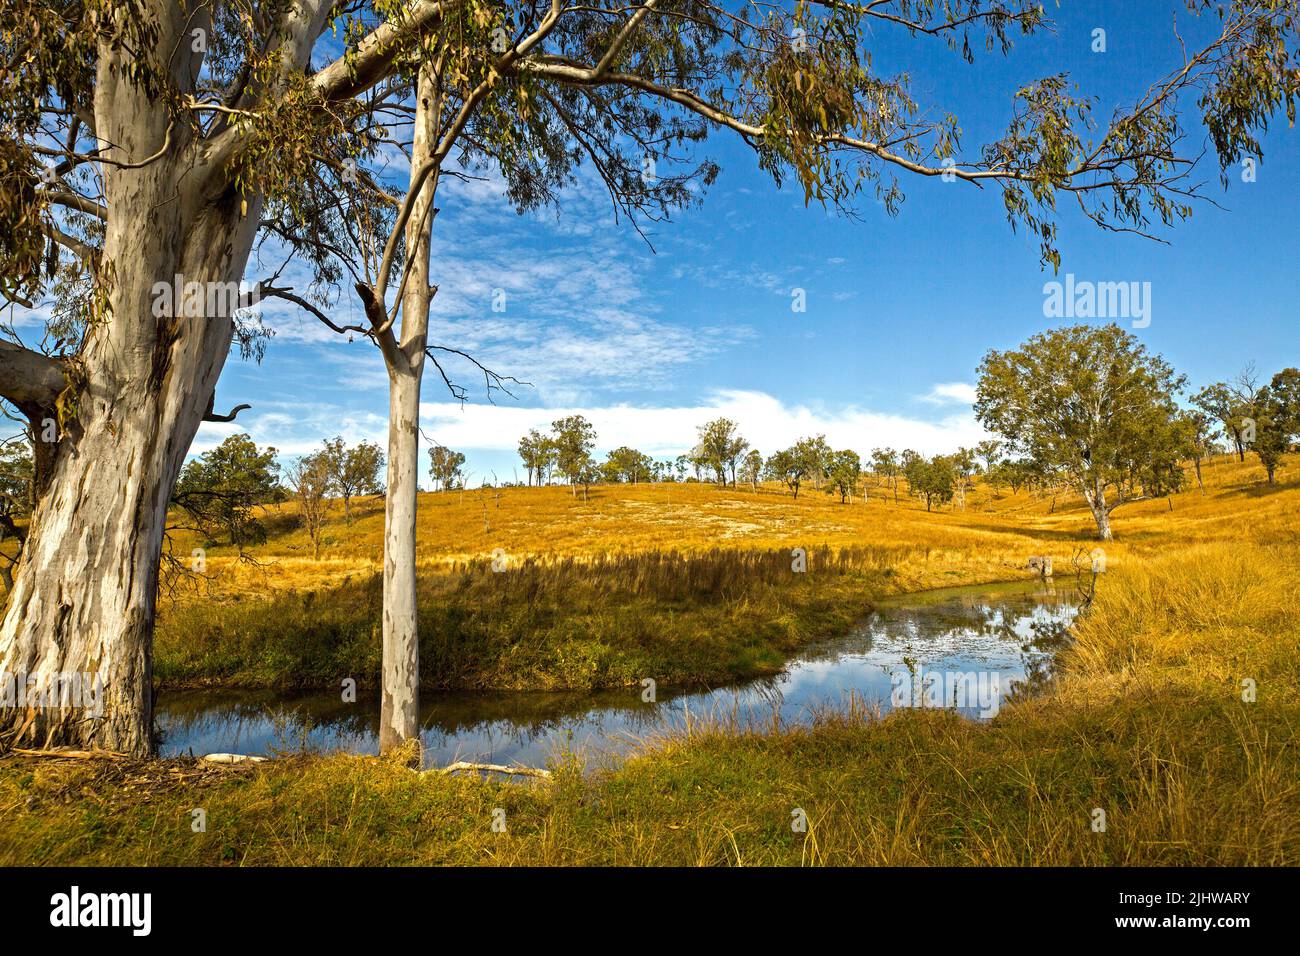 Australische ländliche Landschaft mit goldenen Gräsern und verstreuten Gummibäumen, die den Bach am Fuße der niedrigen Hügel unter blauem Himmel säumen Stockfoto